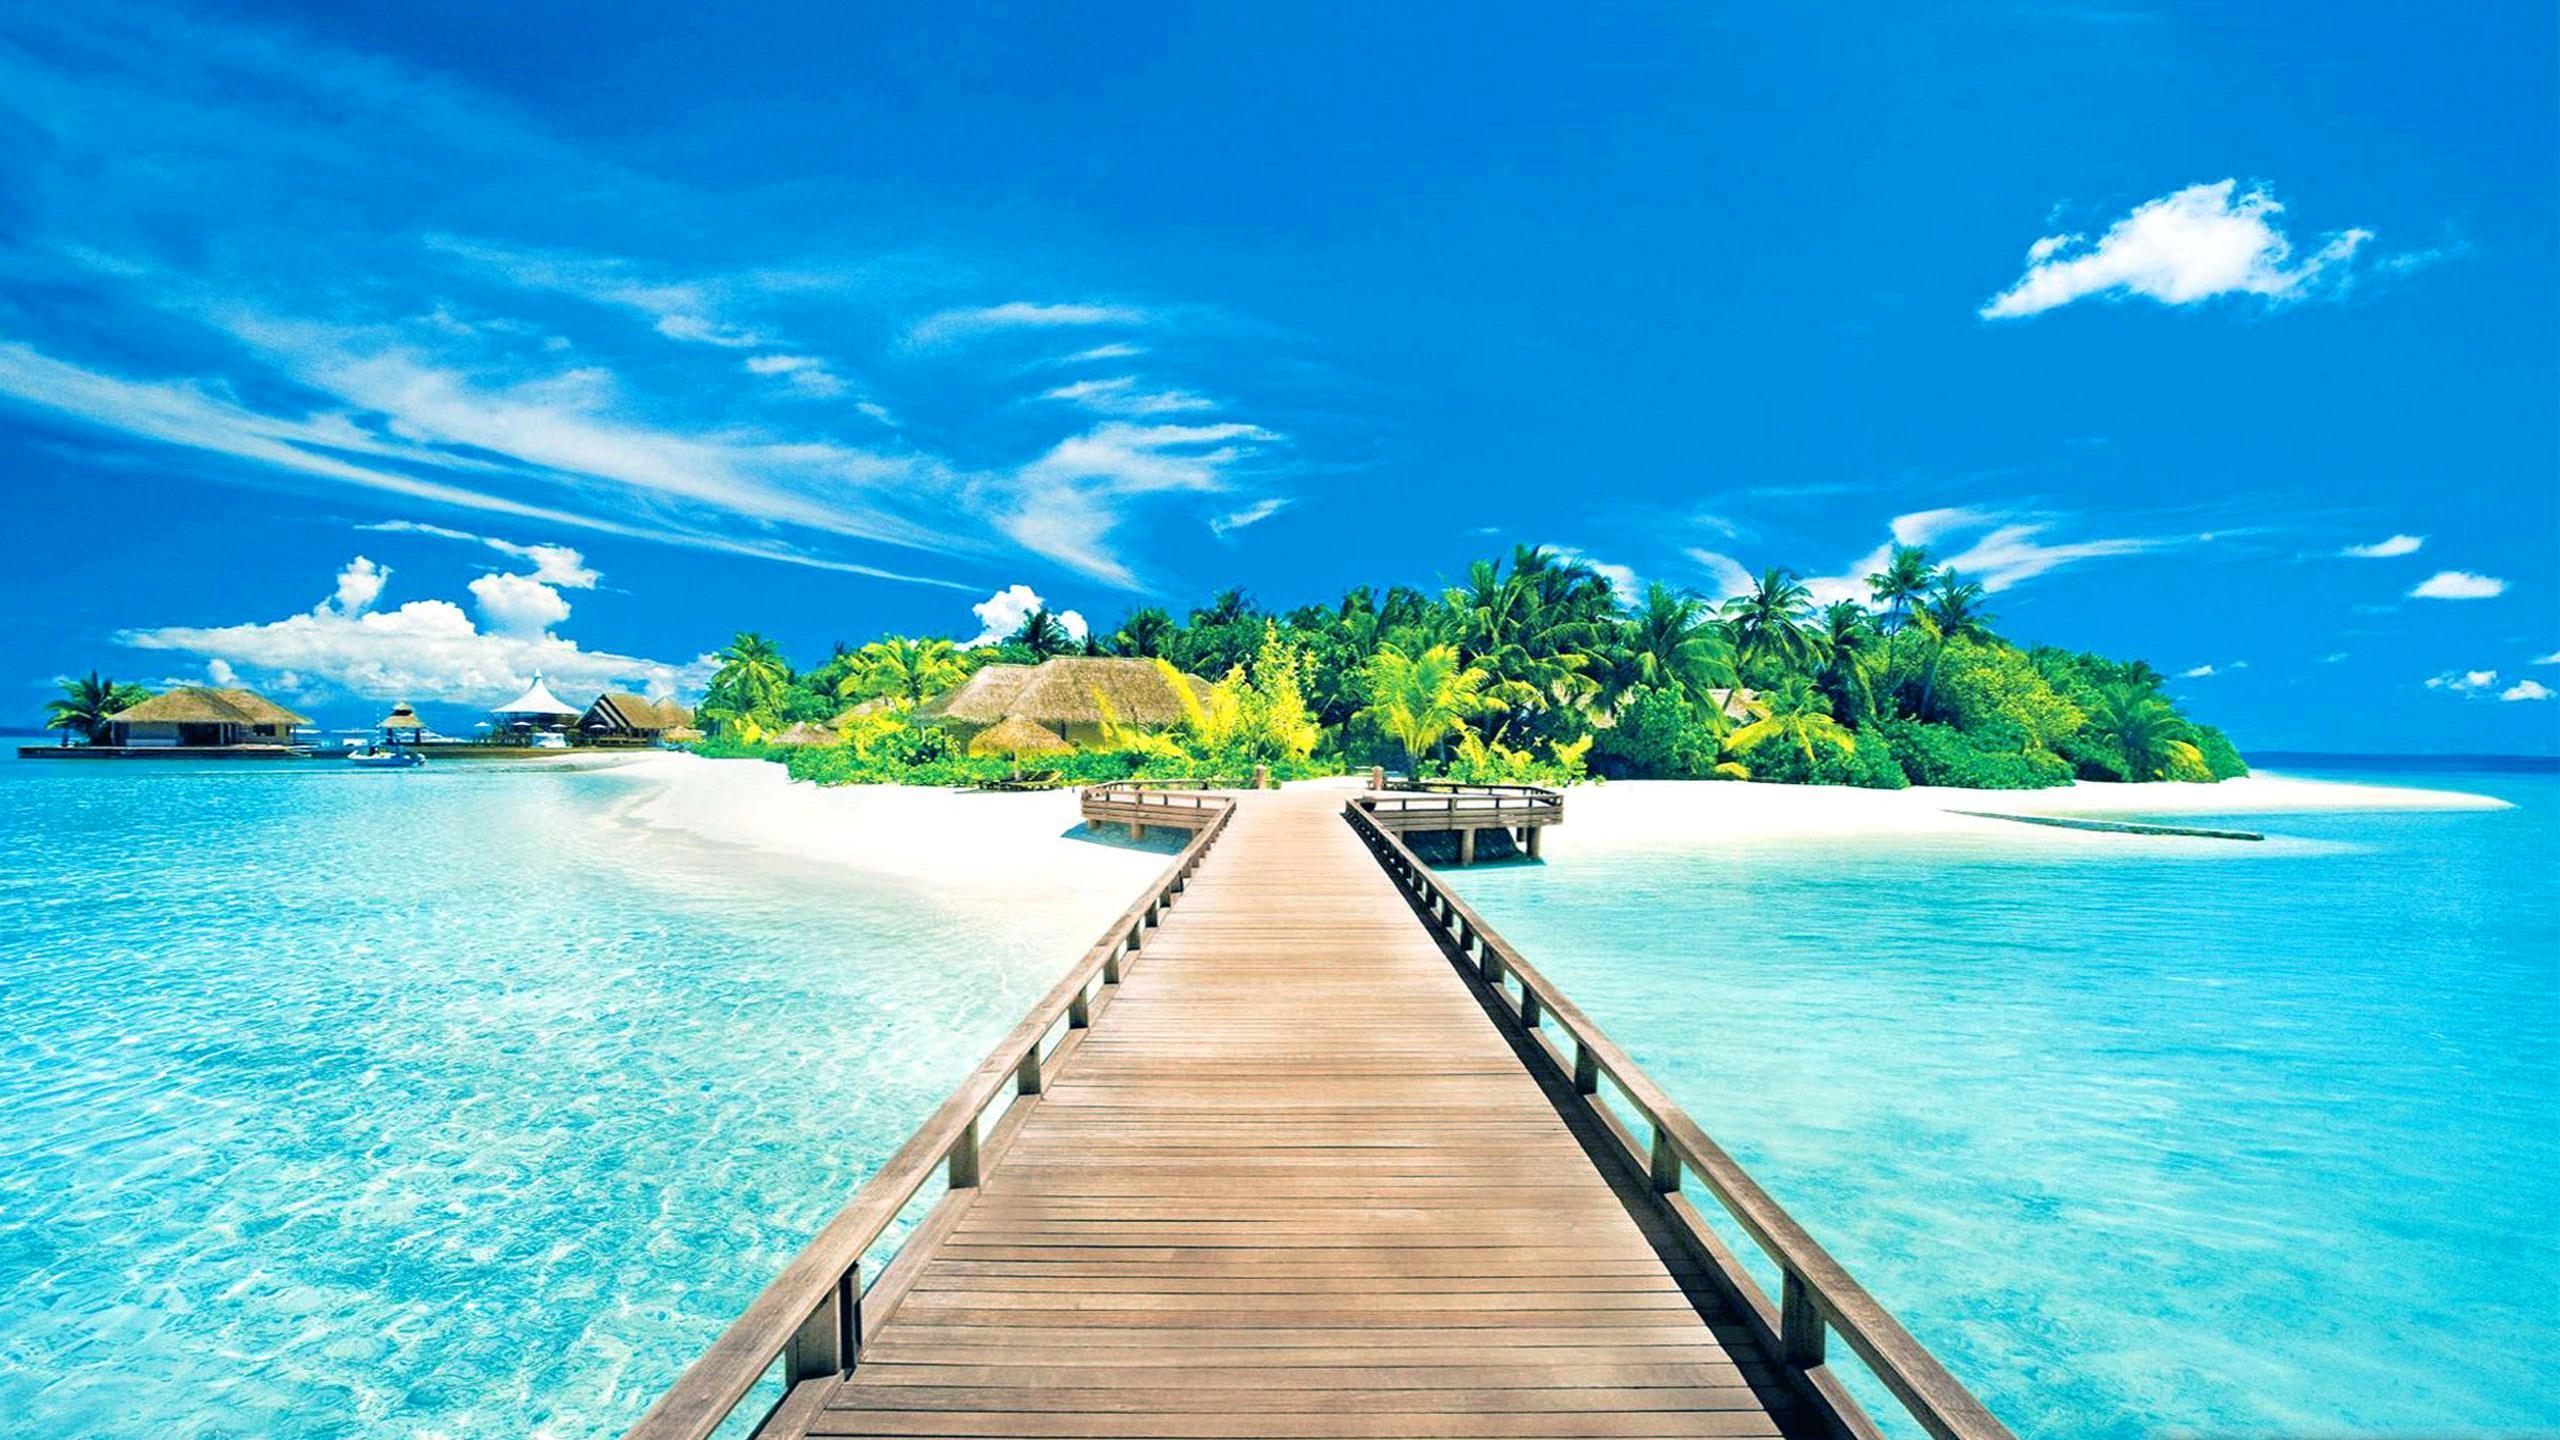 Tropical Island Paradise Background